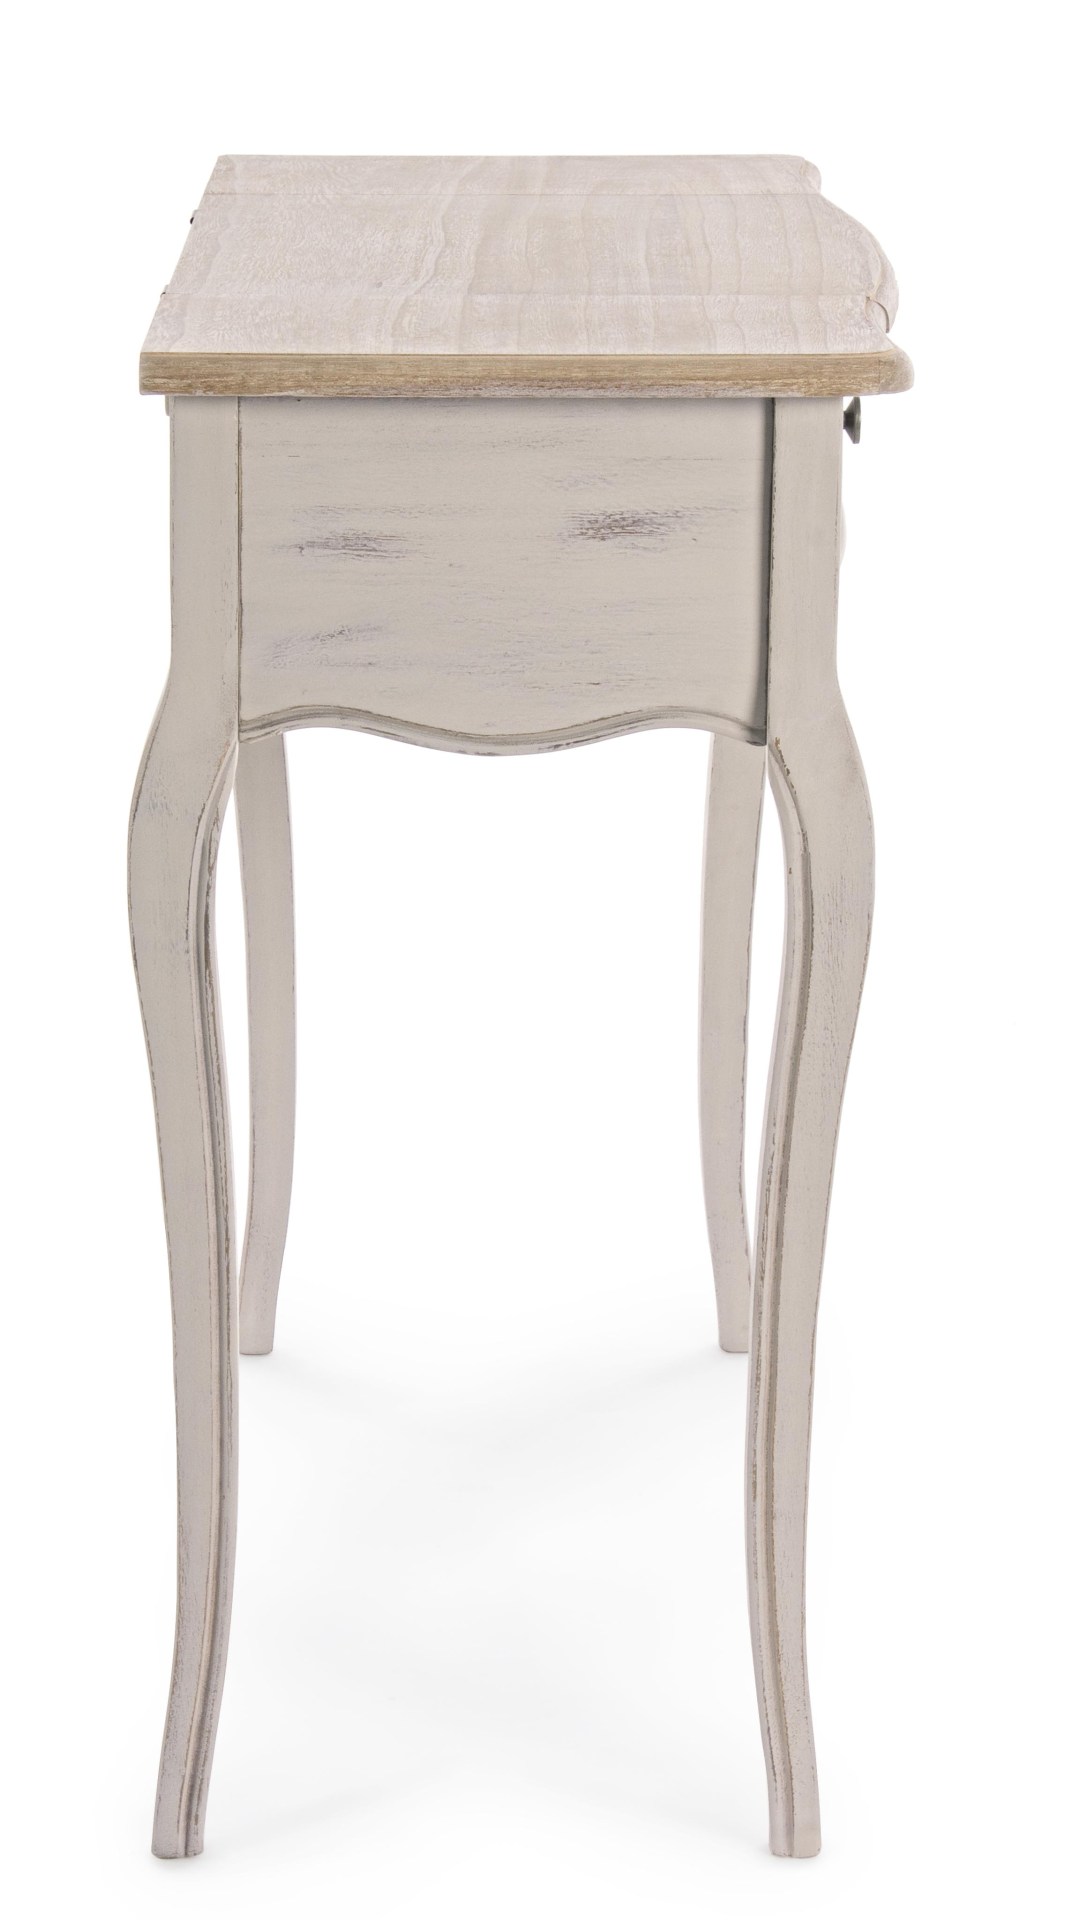 Die Konsole Clarisse überzeugt mit ihrem klassischen Design. Gefertigt wurde sie aus Paulowniaholz, welches einen grauen Farbton besitzt. Das Gestell ist auch aus Paulowniaholz. Die Konsole verfügt über einen Spiegel und eine Schublade. Die Breite beträgt